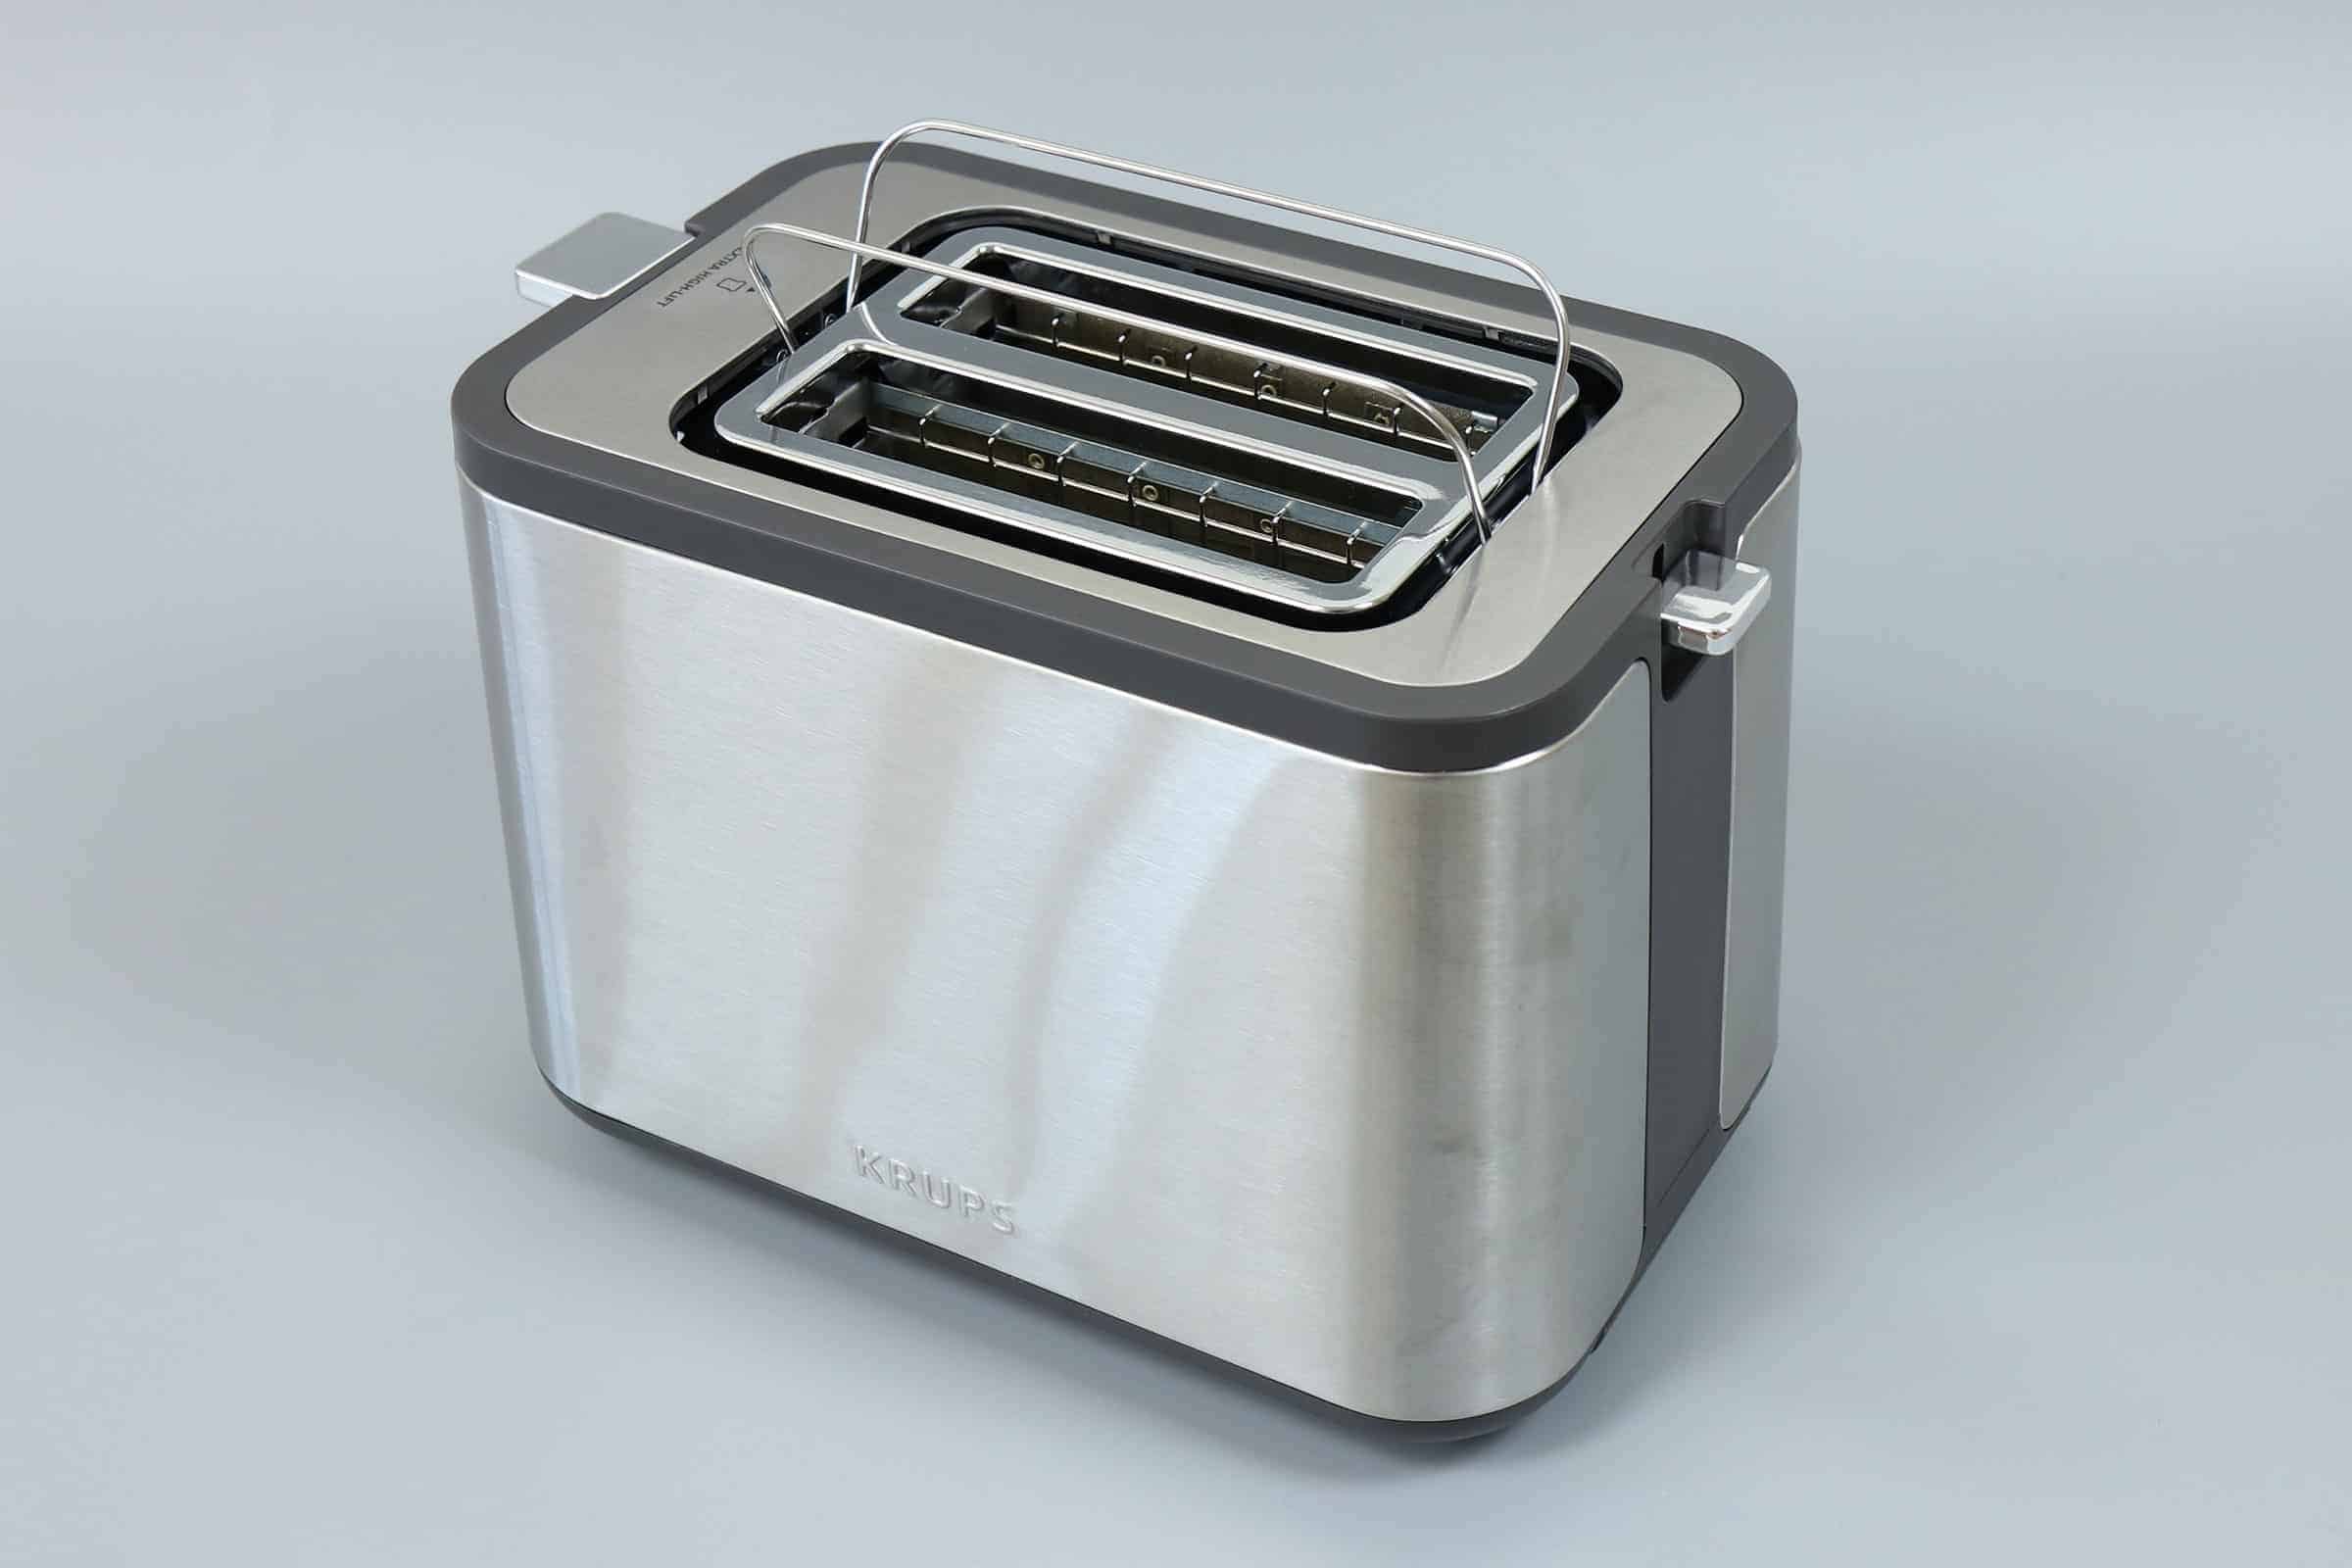 Toaster Test: Krups Kh442